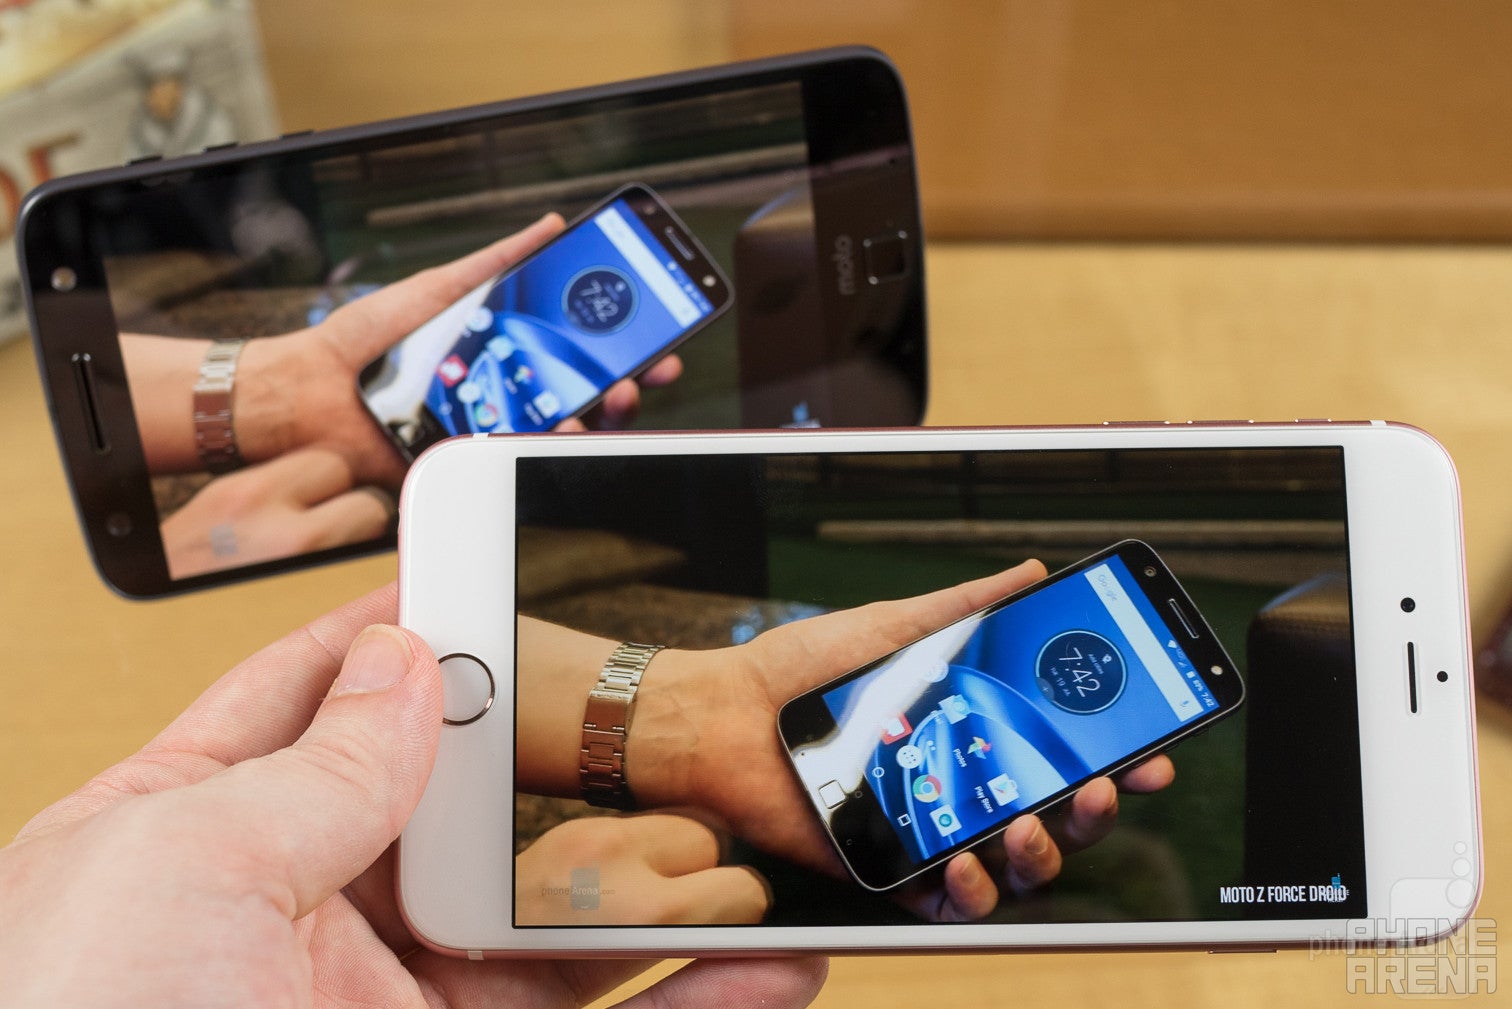 Moto Z Force Droid vs Apple iPhone 6s Plus